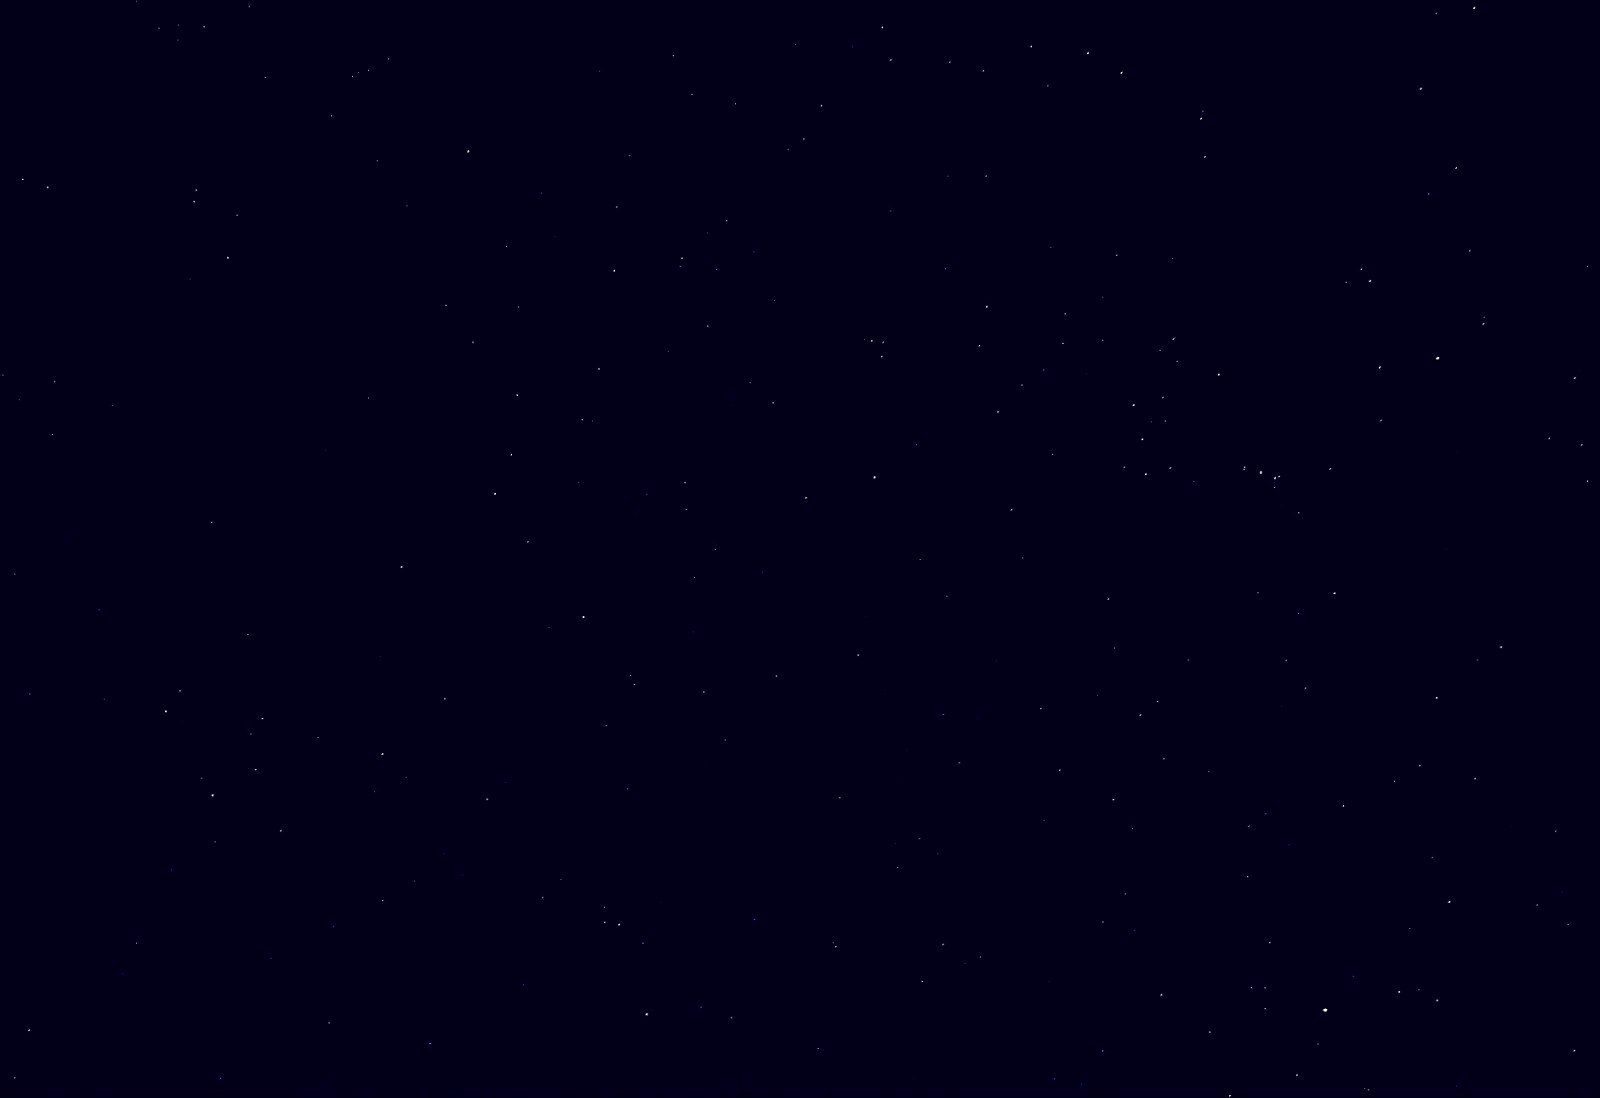 双子座与猎户座-东阳台-2021-12-14-22-55.jpg